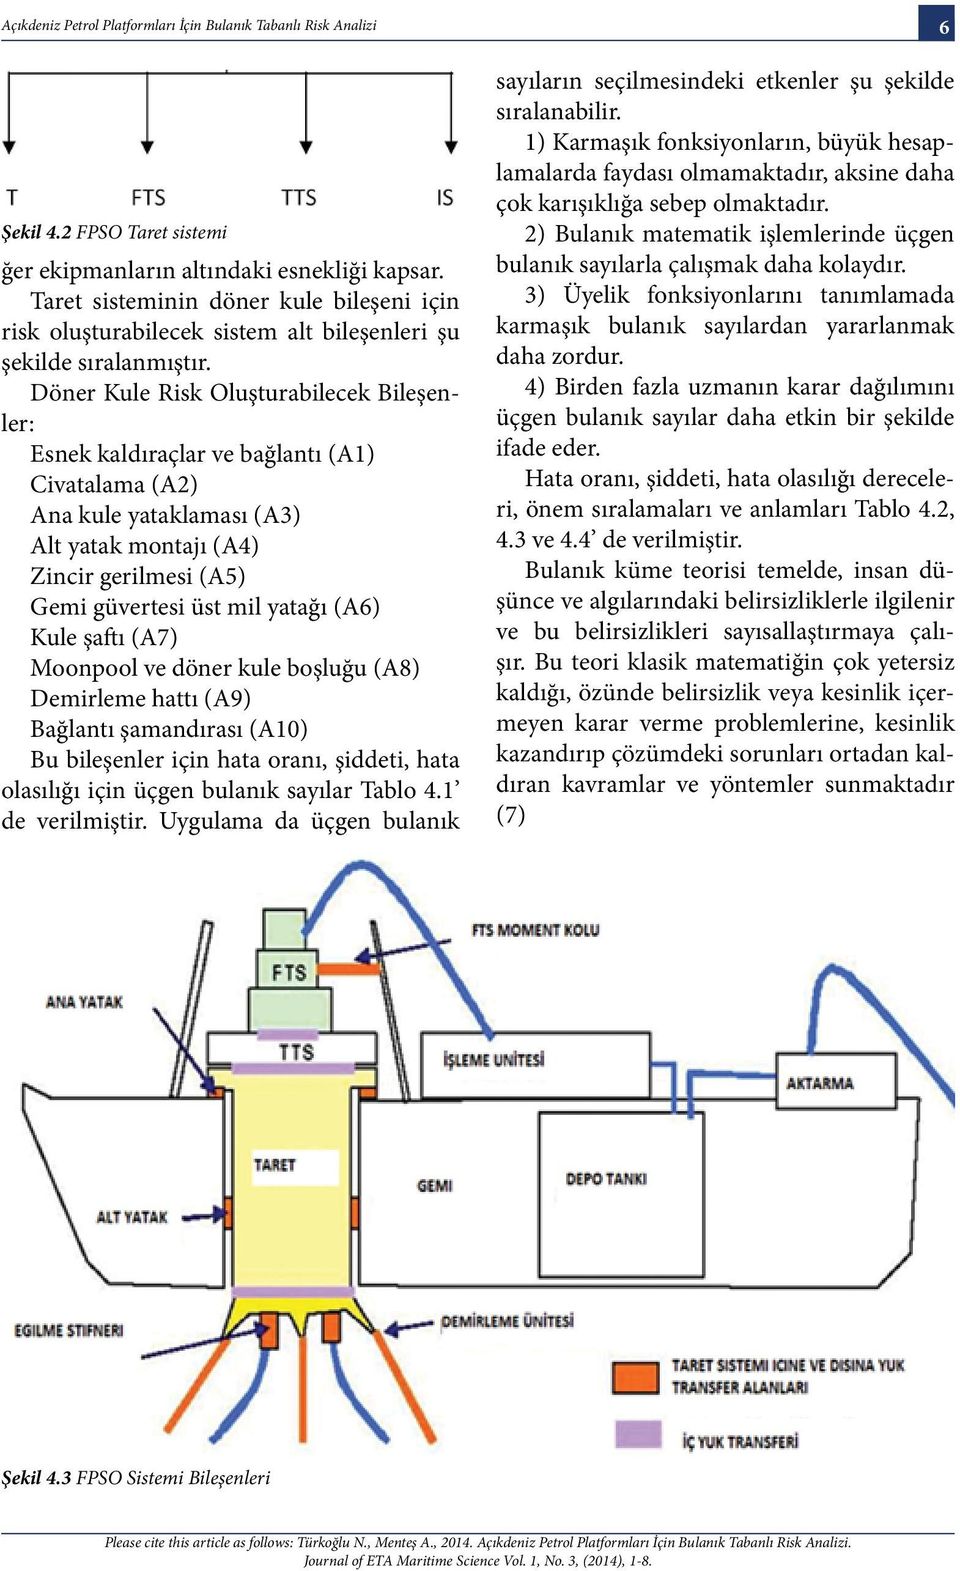 Döner Kule Risk Oluşturabilecek Bileşenler: Esnek kaldıraçlar ve bağlantı (A1) Civatalama (A2) Ana kule yataklaması (A3) Alt yatak montajı (A4) Zincir gerilmesi (A5) Gemi güvertesi üst mil yatağı